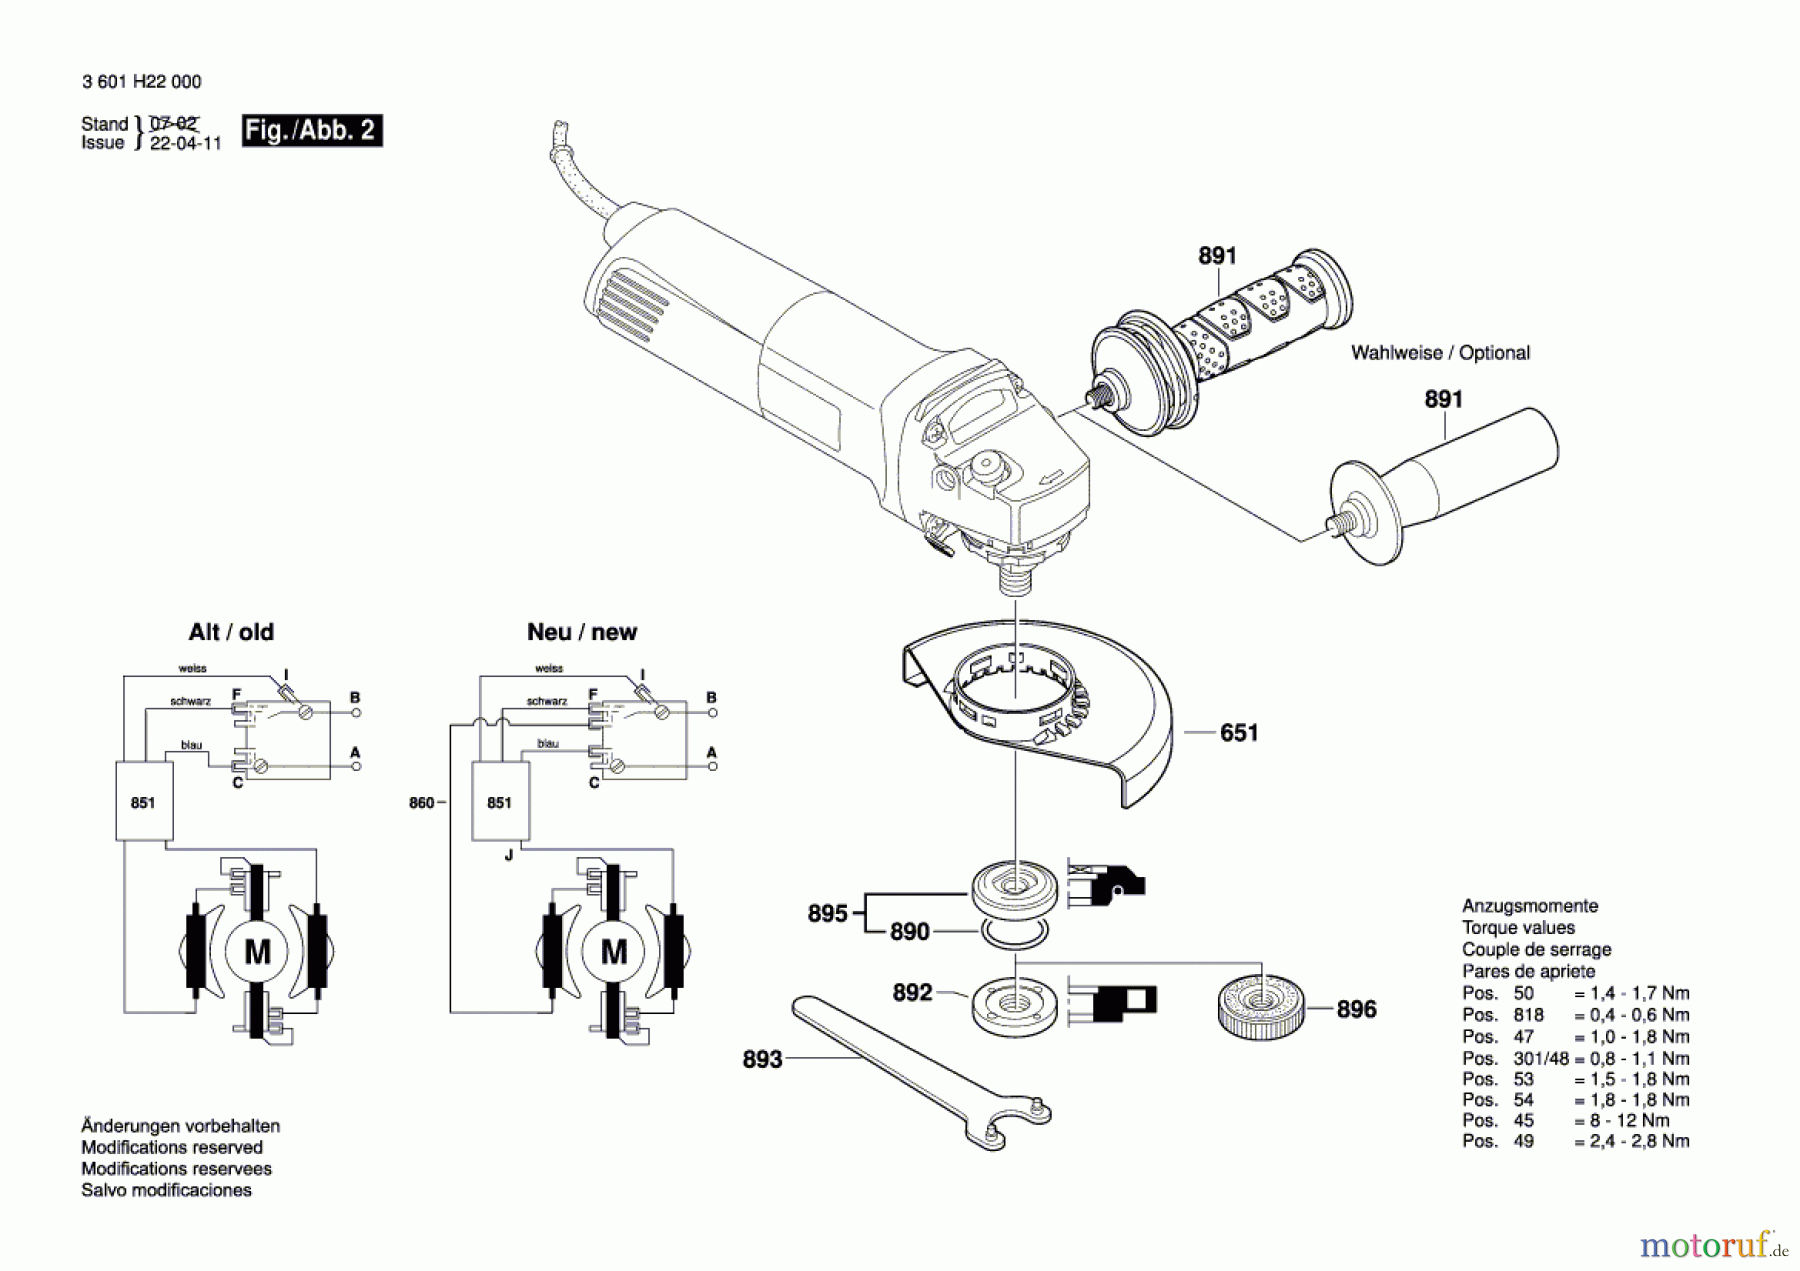  Bosch Werkzeug Winkelschleifer GWS 11-125 CI Seite 2